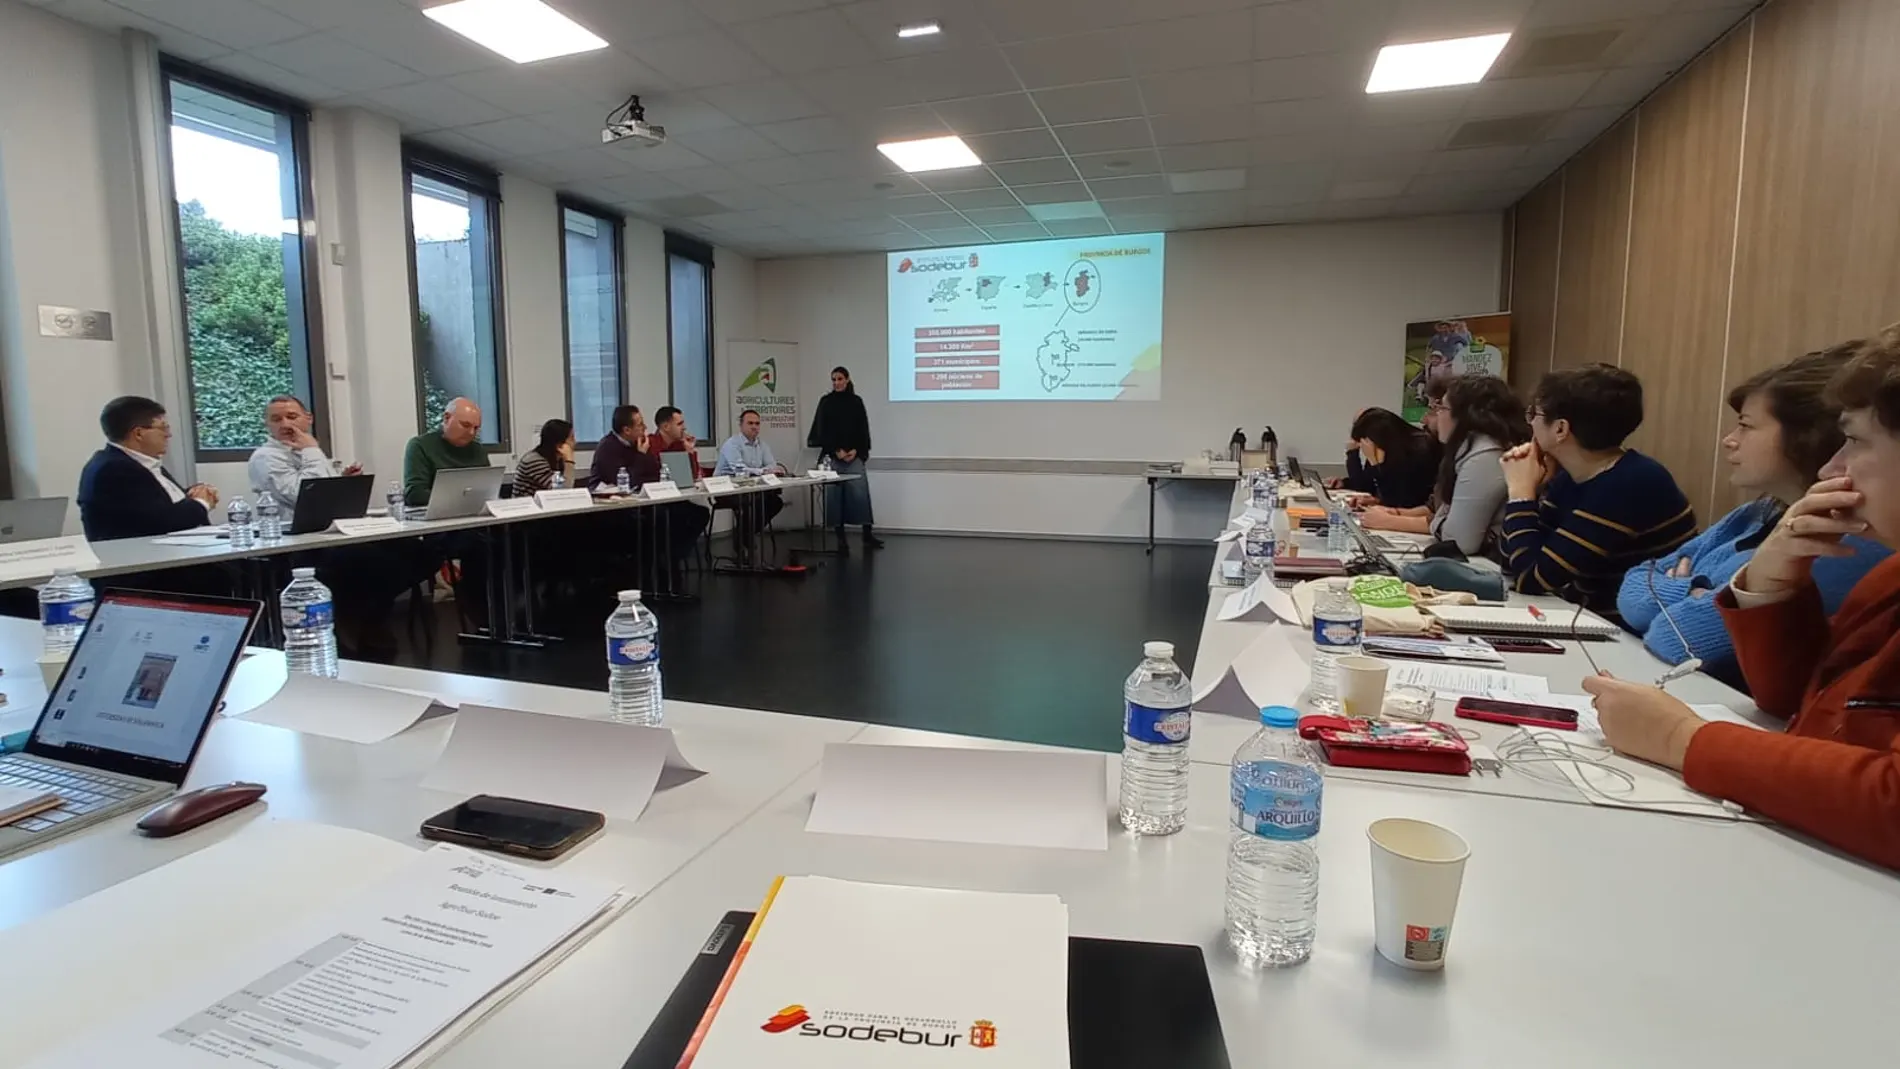 Sodebur participa en el encuentro que ha tenido lugar en Perigueux (Francia)